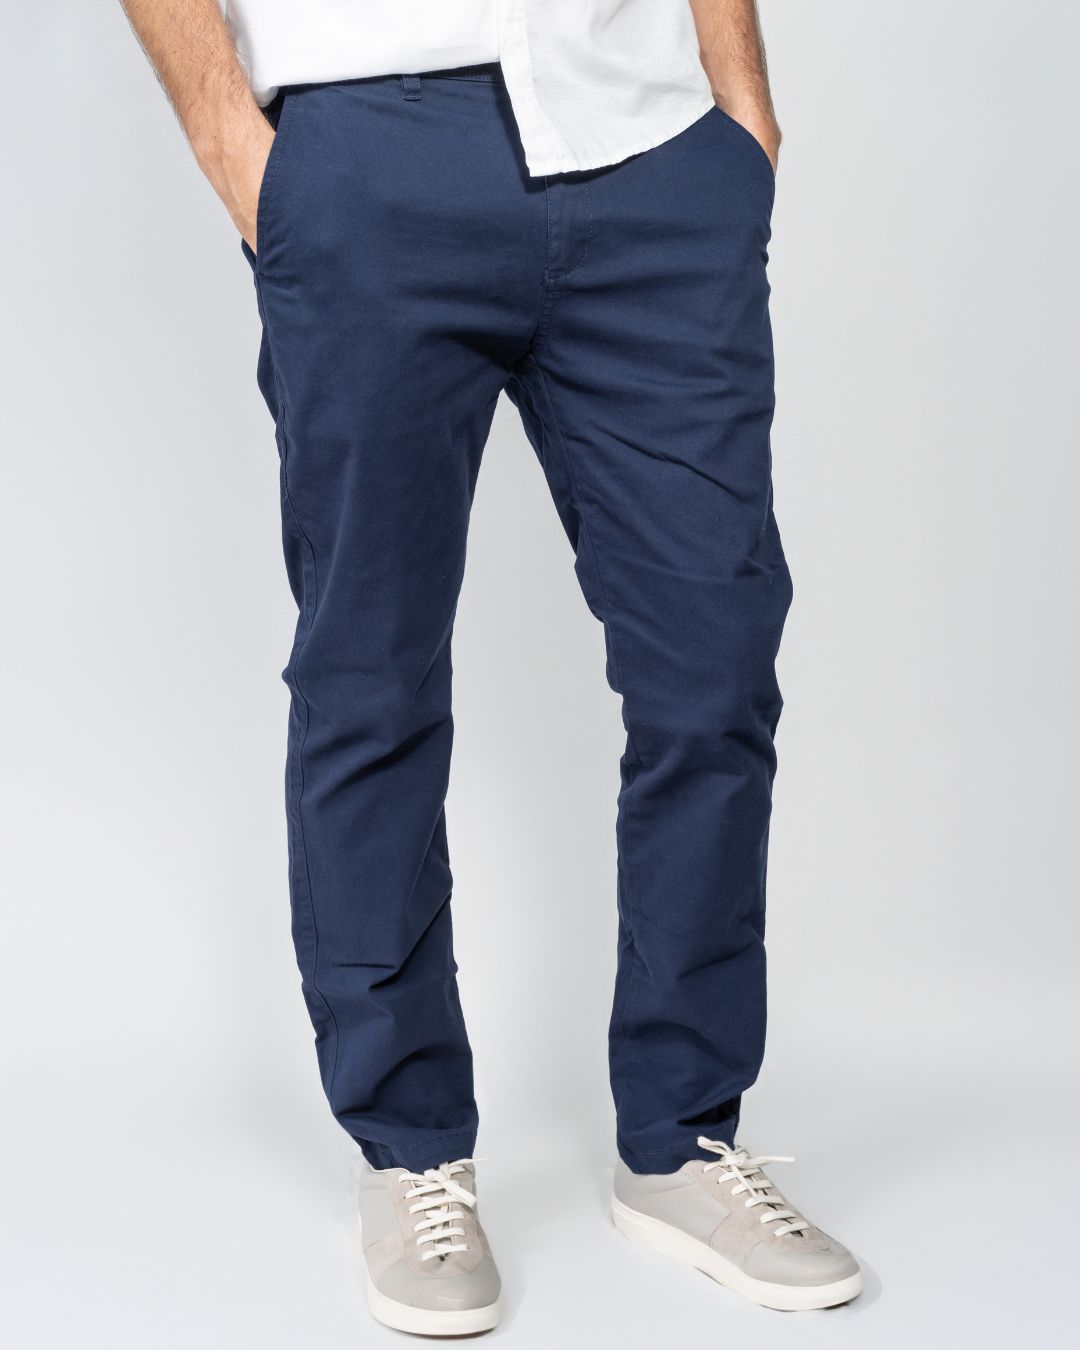 Pantalón azul navy elástico